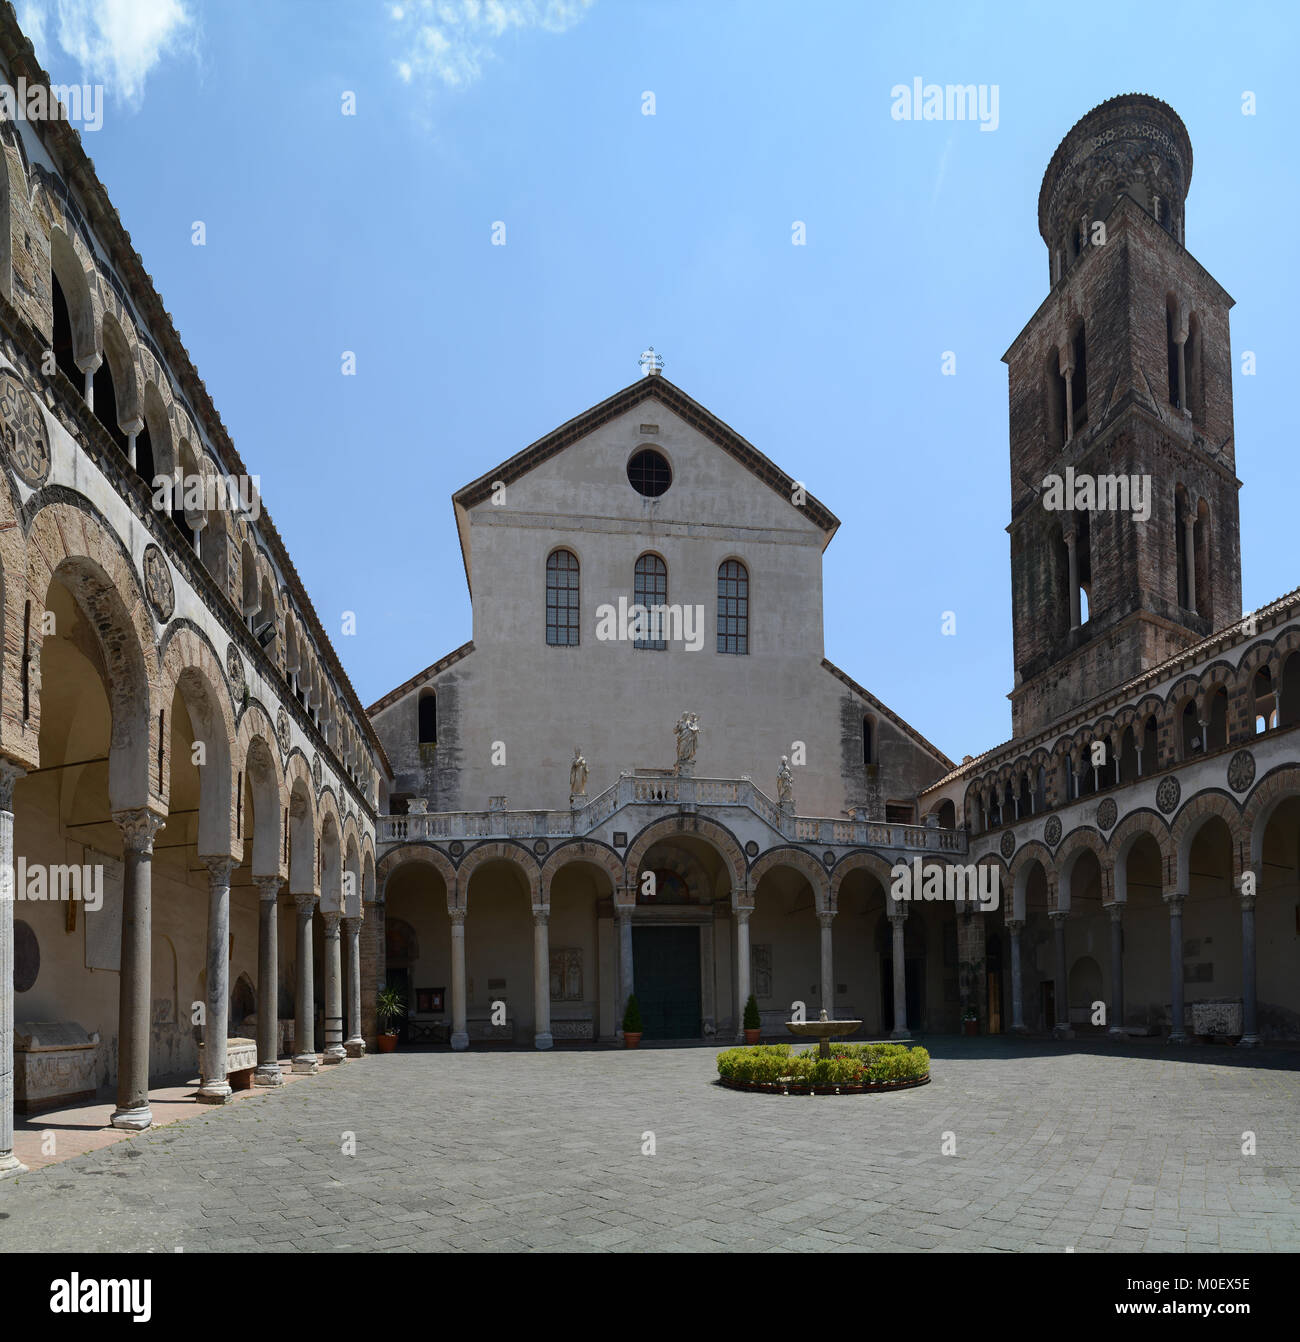 La cour de la cathédrale de San Matteo (St. Matthew's Cathedral) à Salerne, Italie. Banque D'Images